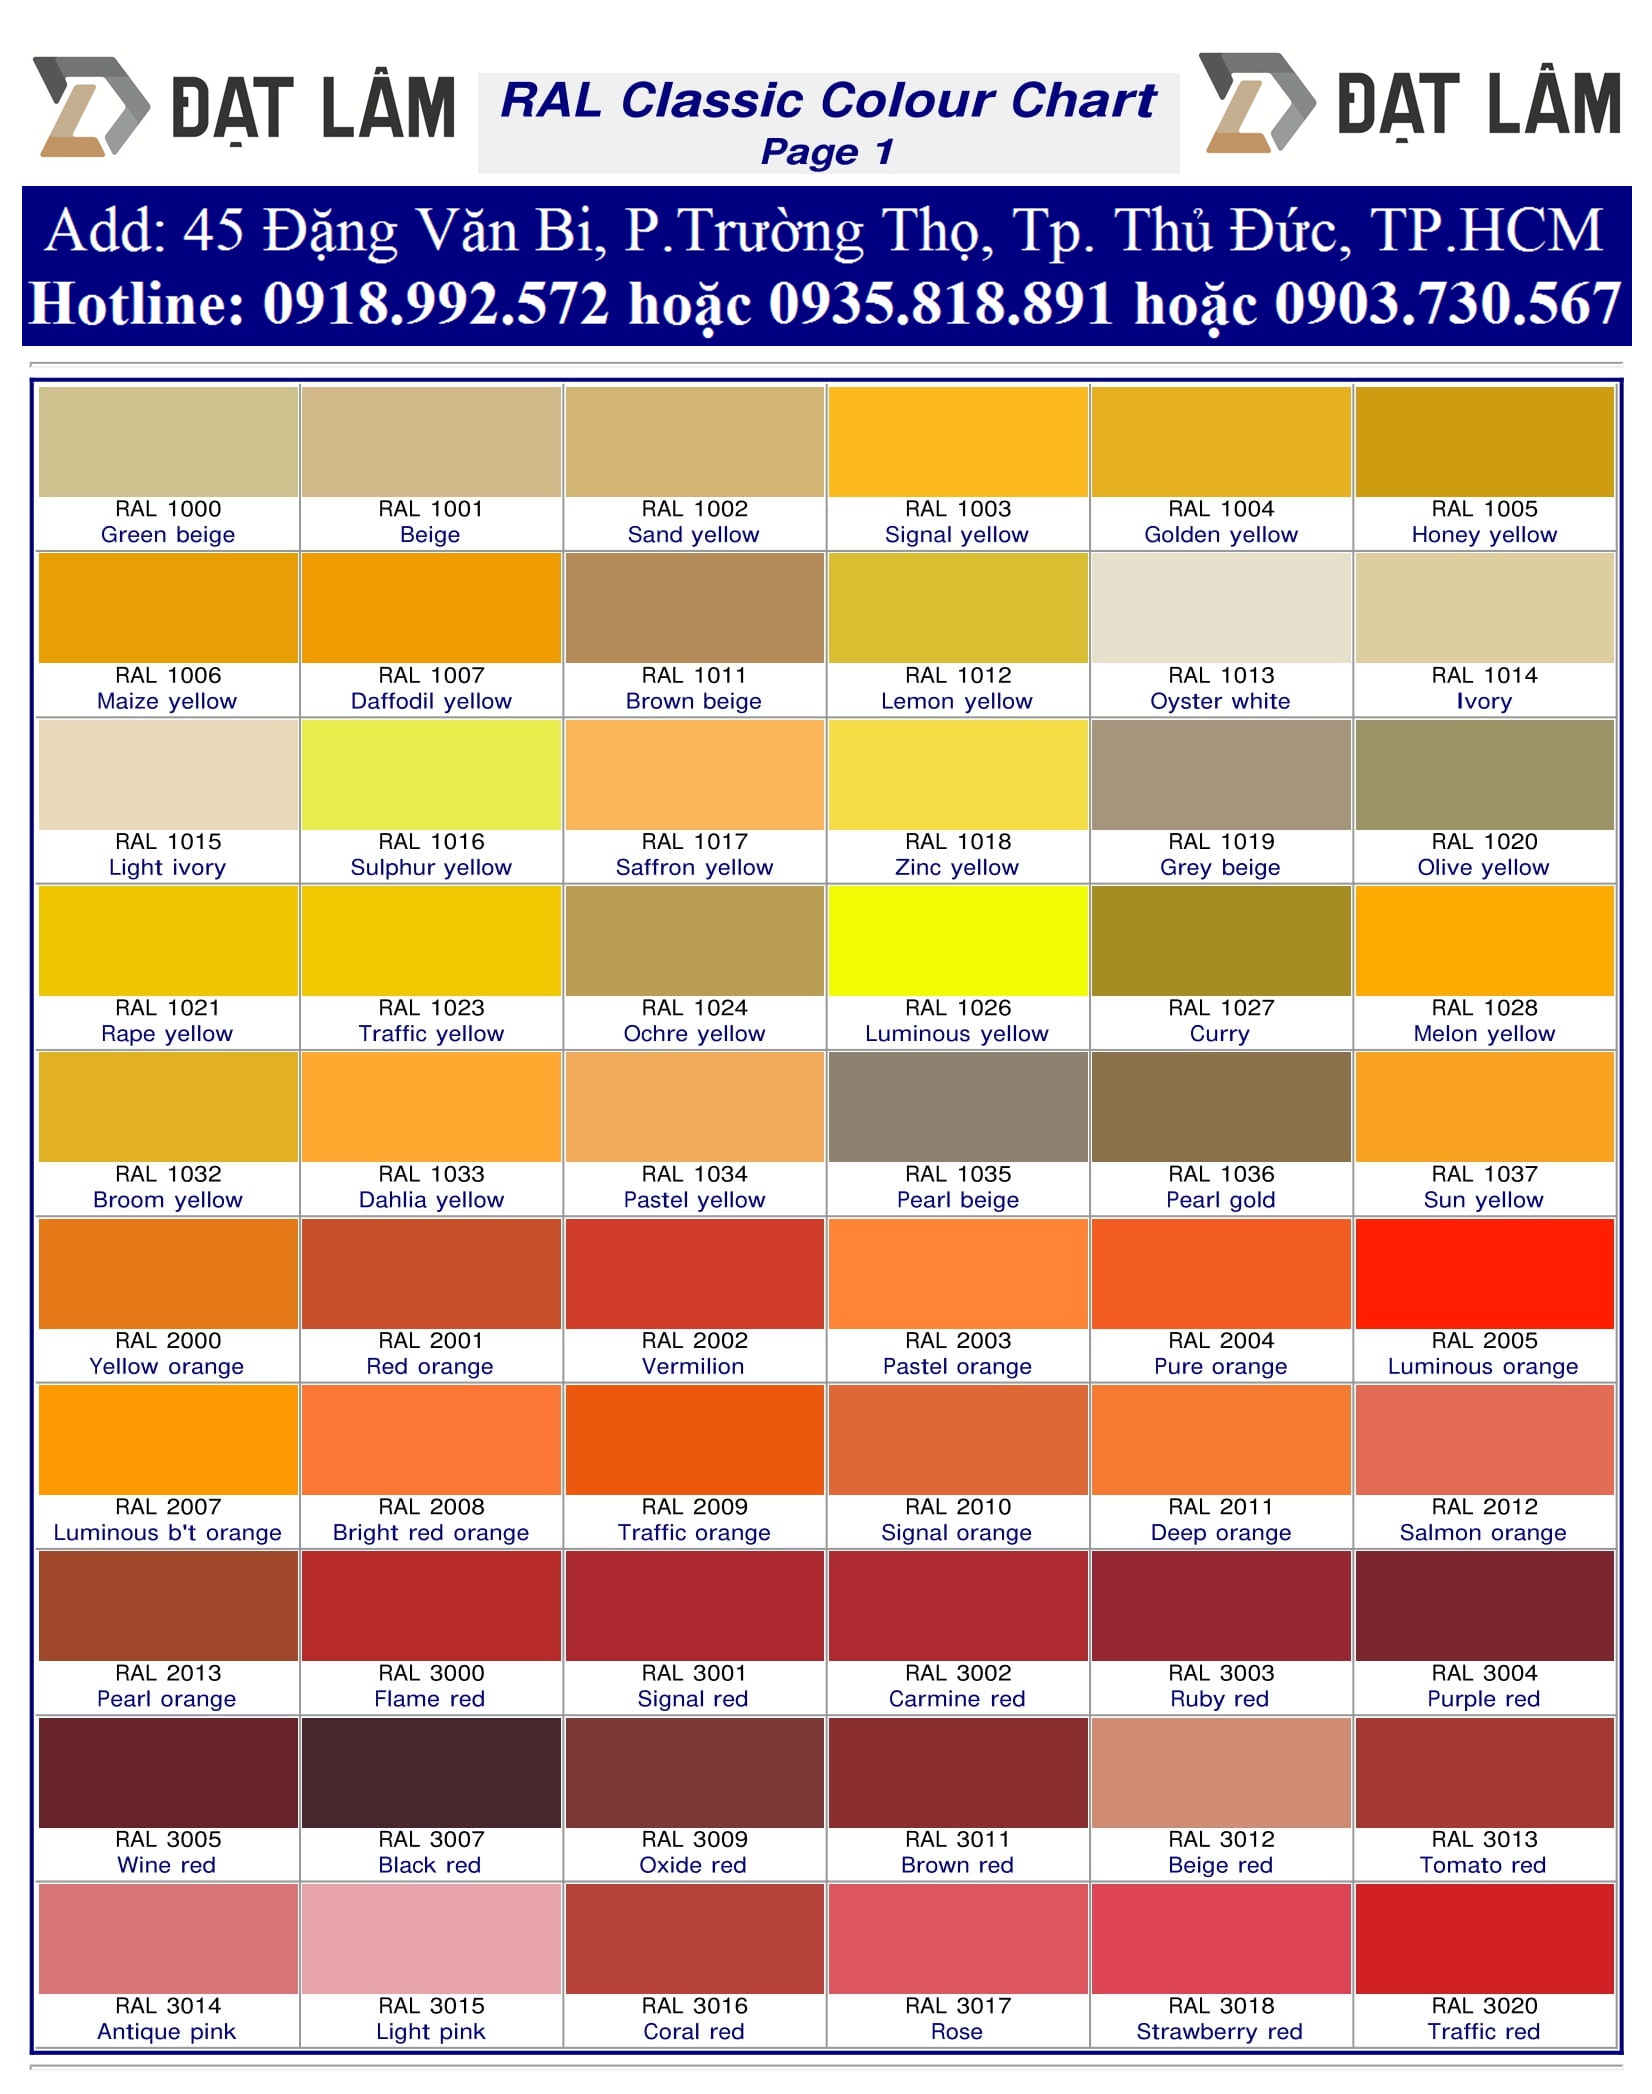 Bảng Màu Quốc Tế RAL Jotun: Với bảng màu quốc tế RAL Jotun, bạn có thể tìm thấy những màu sắc tuyệt đẹp để sơn nhà, công trình, hoặc các sản phẩm khác. Hãy xem hình ảnh để biết thêm về bảng màu RAL và các sản phẩm chất lượng cao của Jotun!